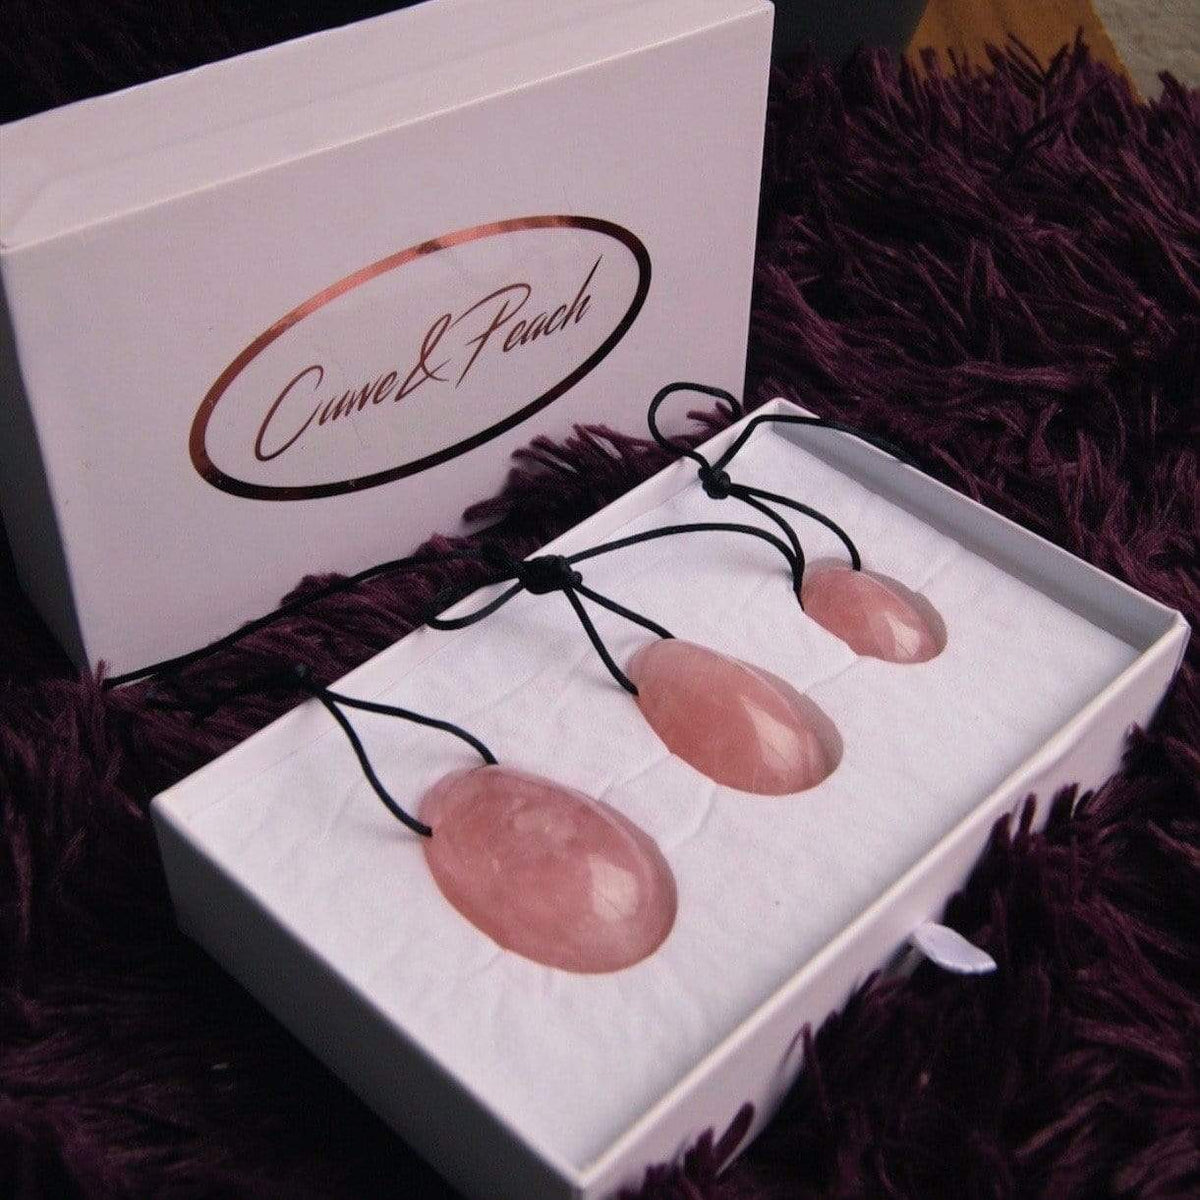 Healing Yoni Egg Set - Premium rose quartz Kegel Exerciser - Just $55! Shop now at @curvenpeach | Pleasure Wands